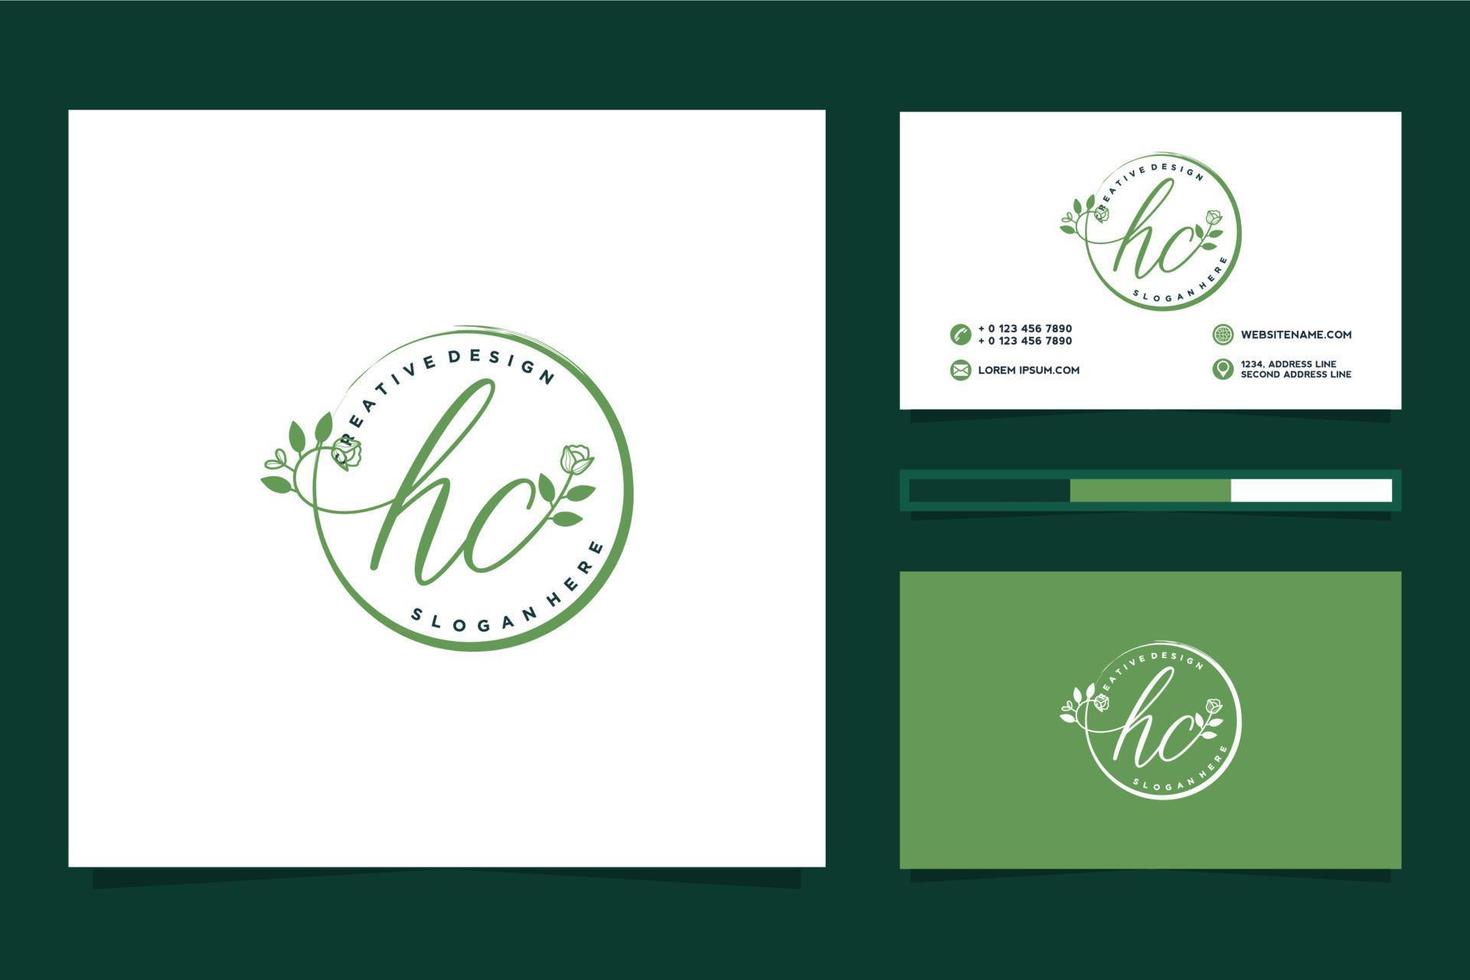 eerste hc vrouwelijk logo collecties en bedrijf kaart templat premie vector